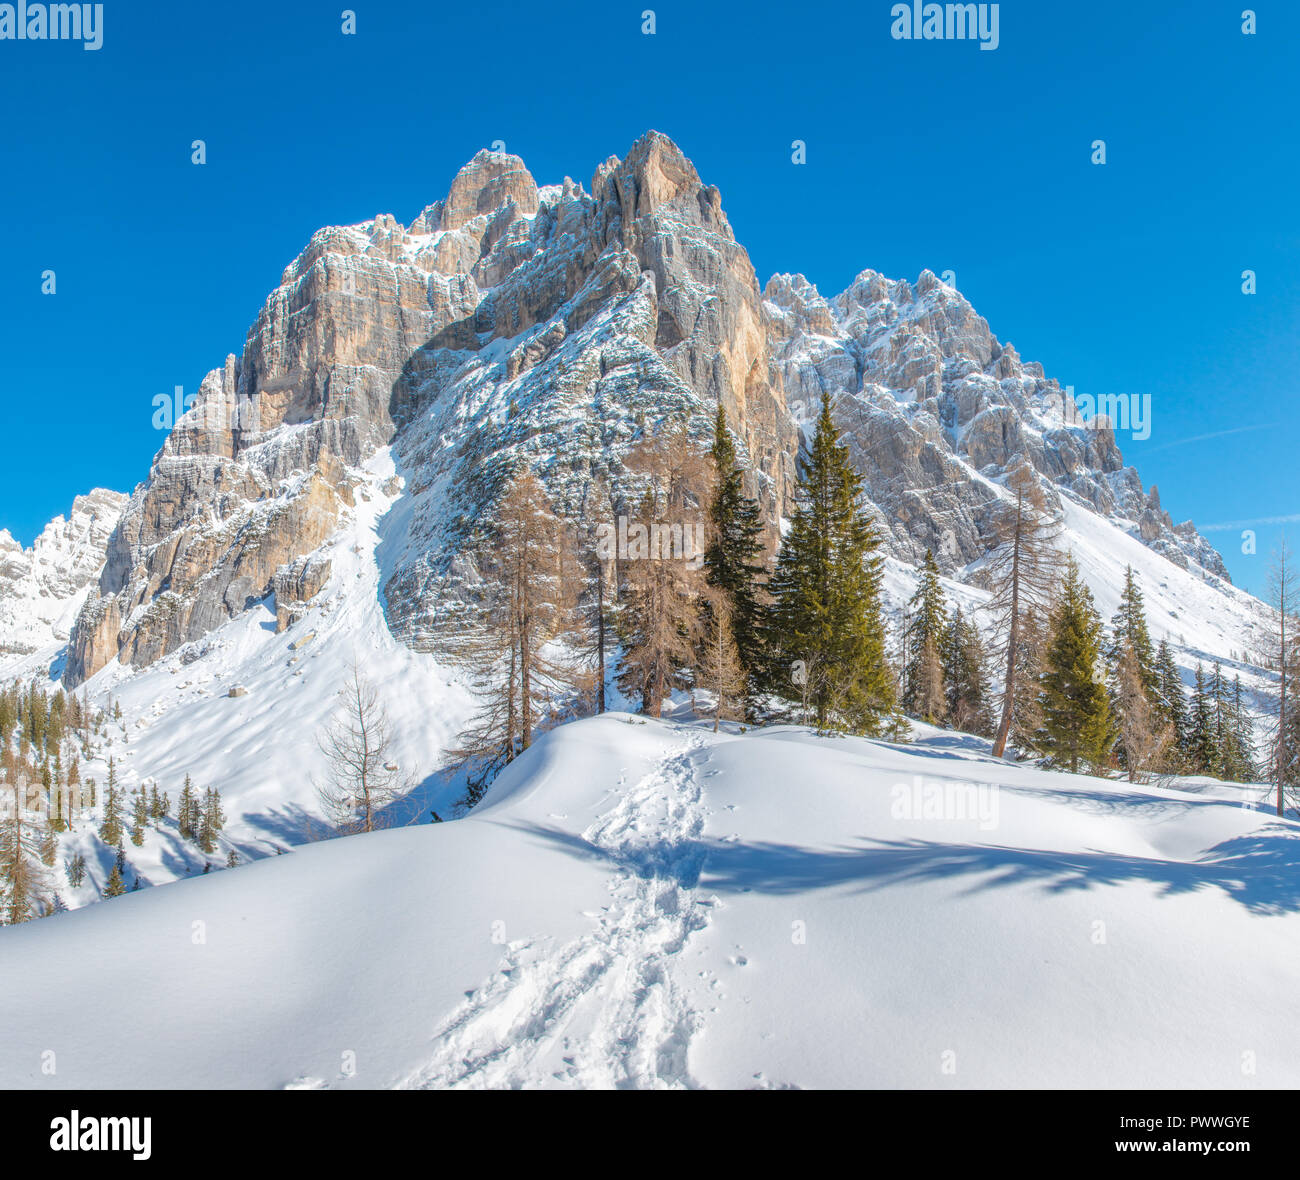 Mur de montagnes imposantes dans les Alpes italiennes, montagnes aux sommets enneigés, des traces dans la neige menant à la forêt. La raquette en hiver. Banque D'Images